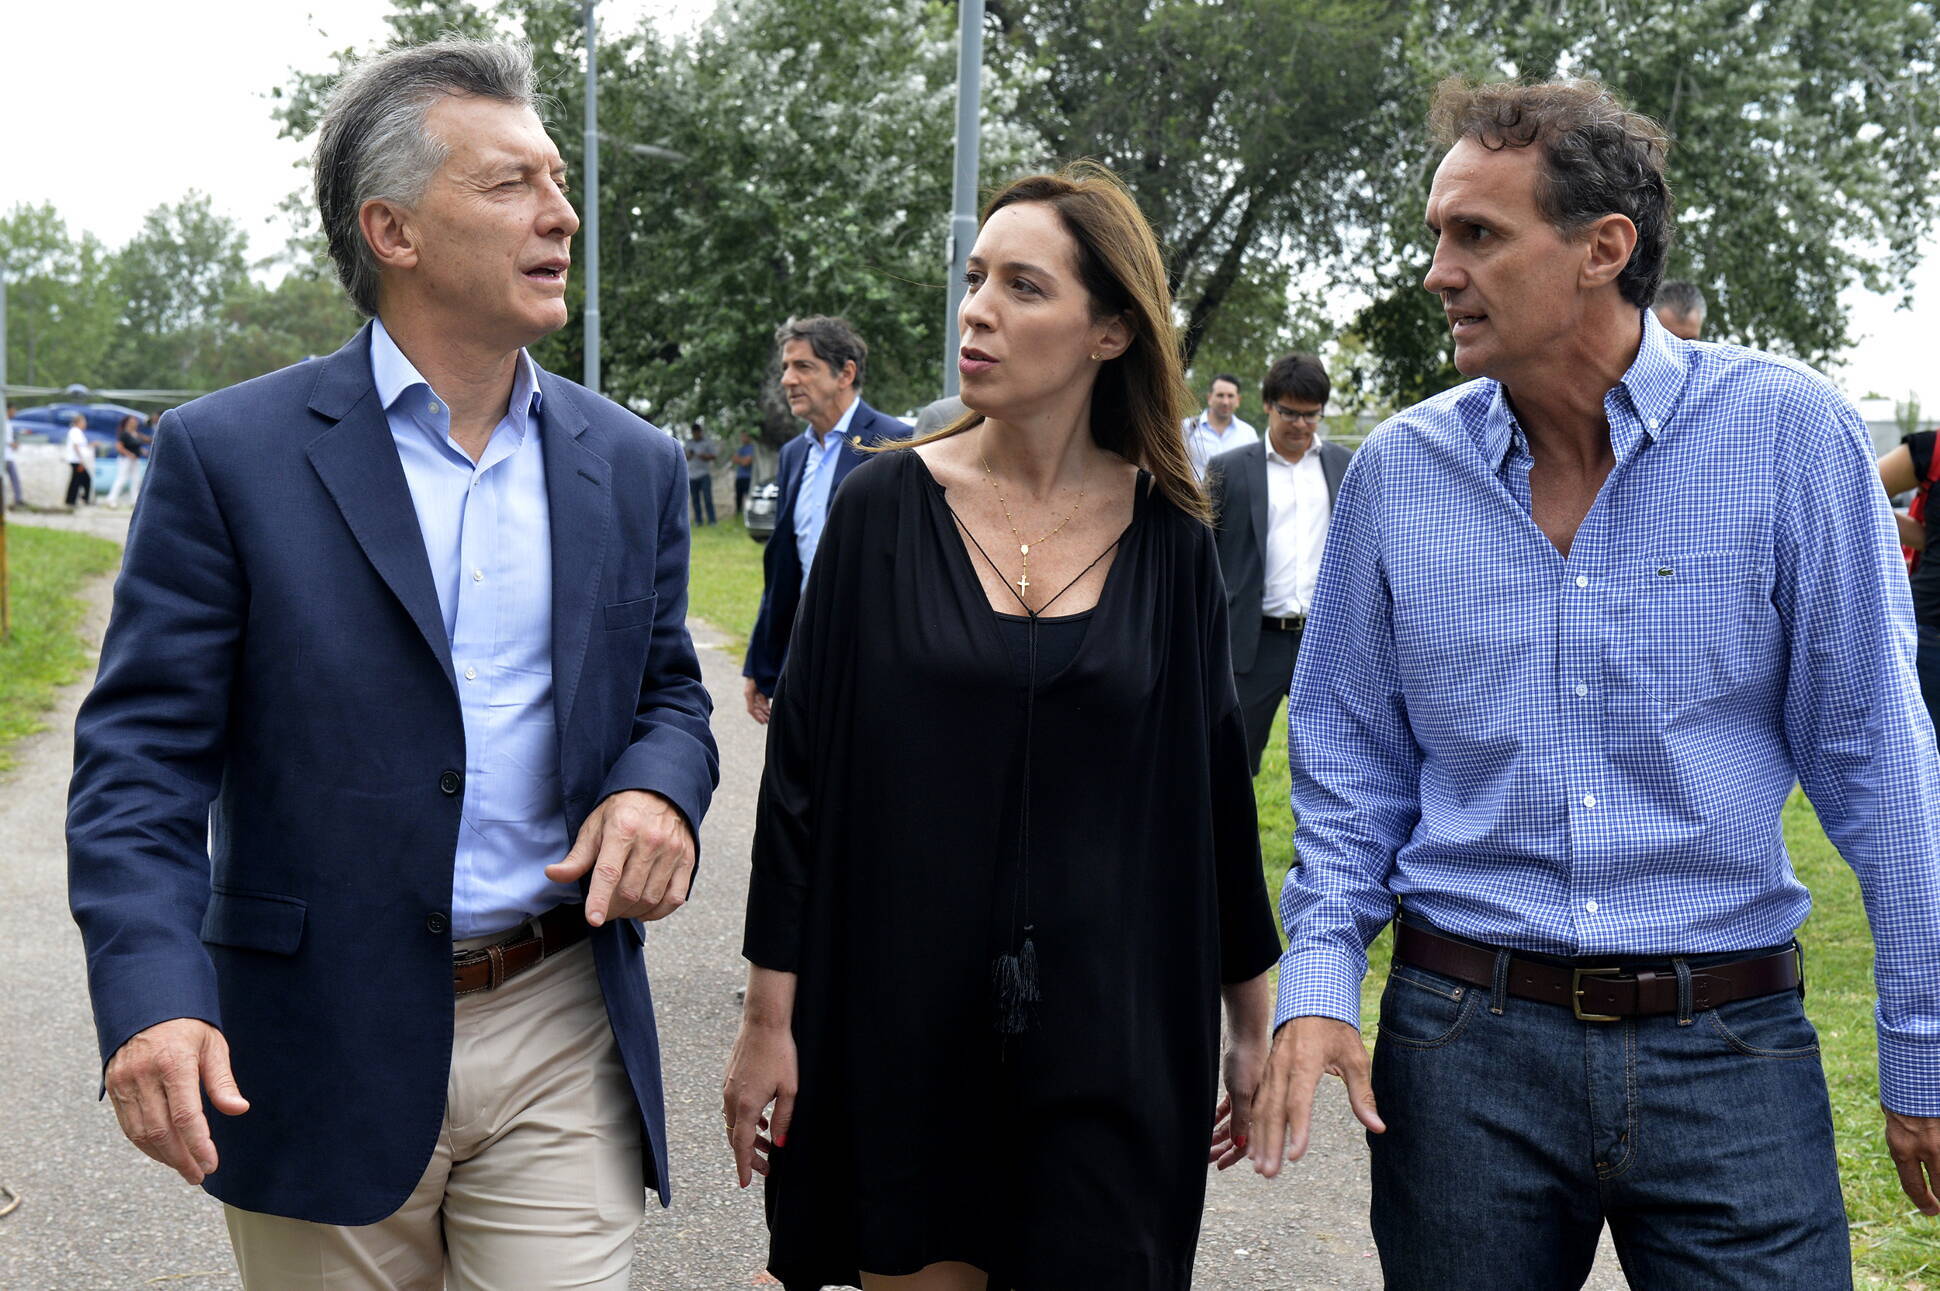 El presidente Macri visitó una colonia de vacaciones en el municipio de San Martín